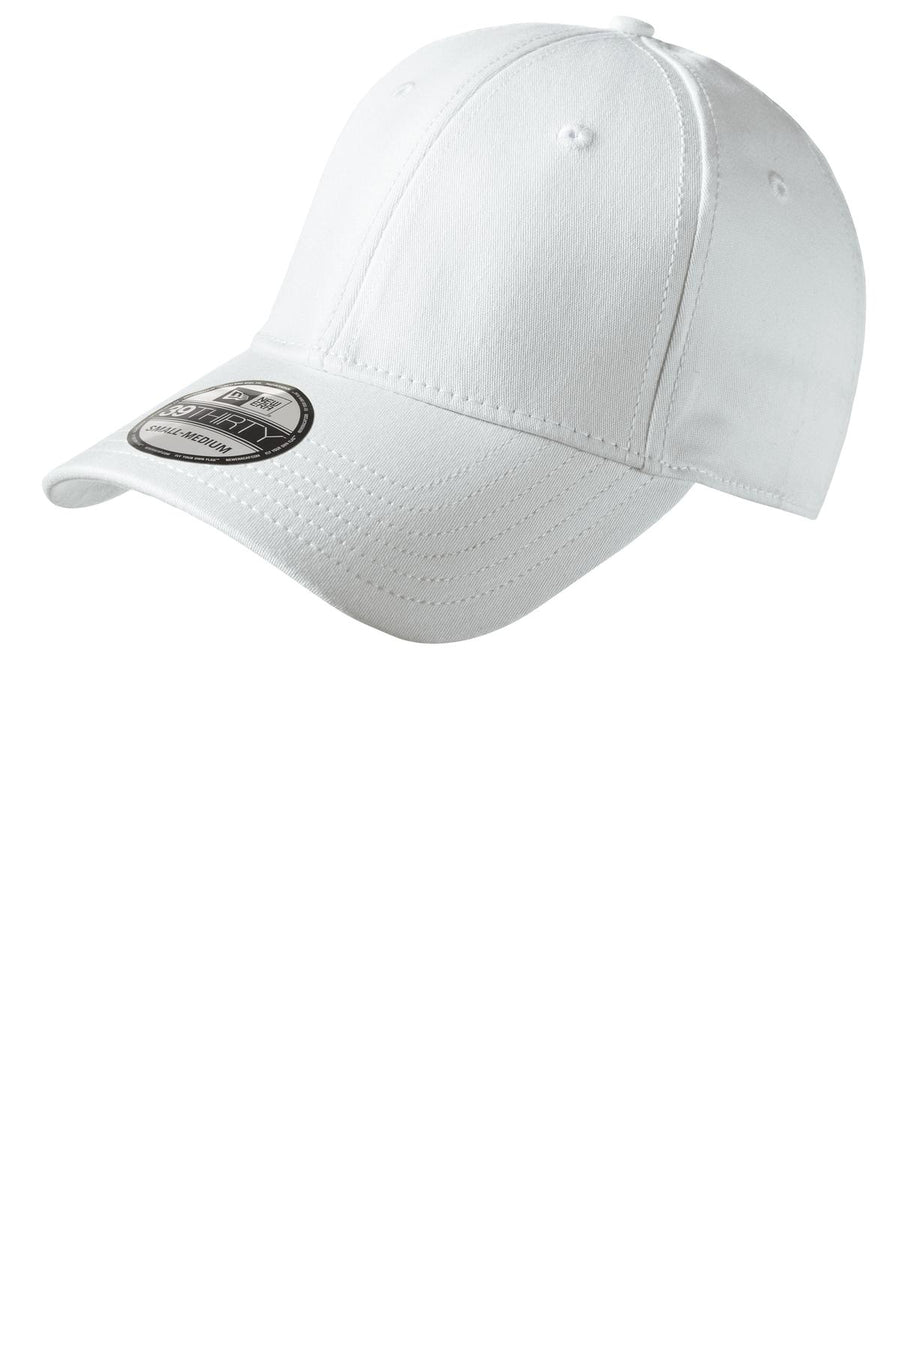 New Era - Structured Stretch Cotton Cap.